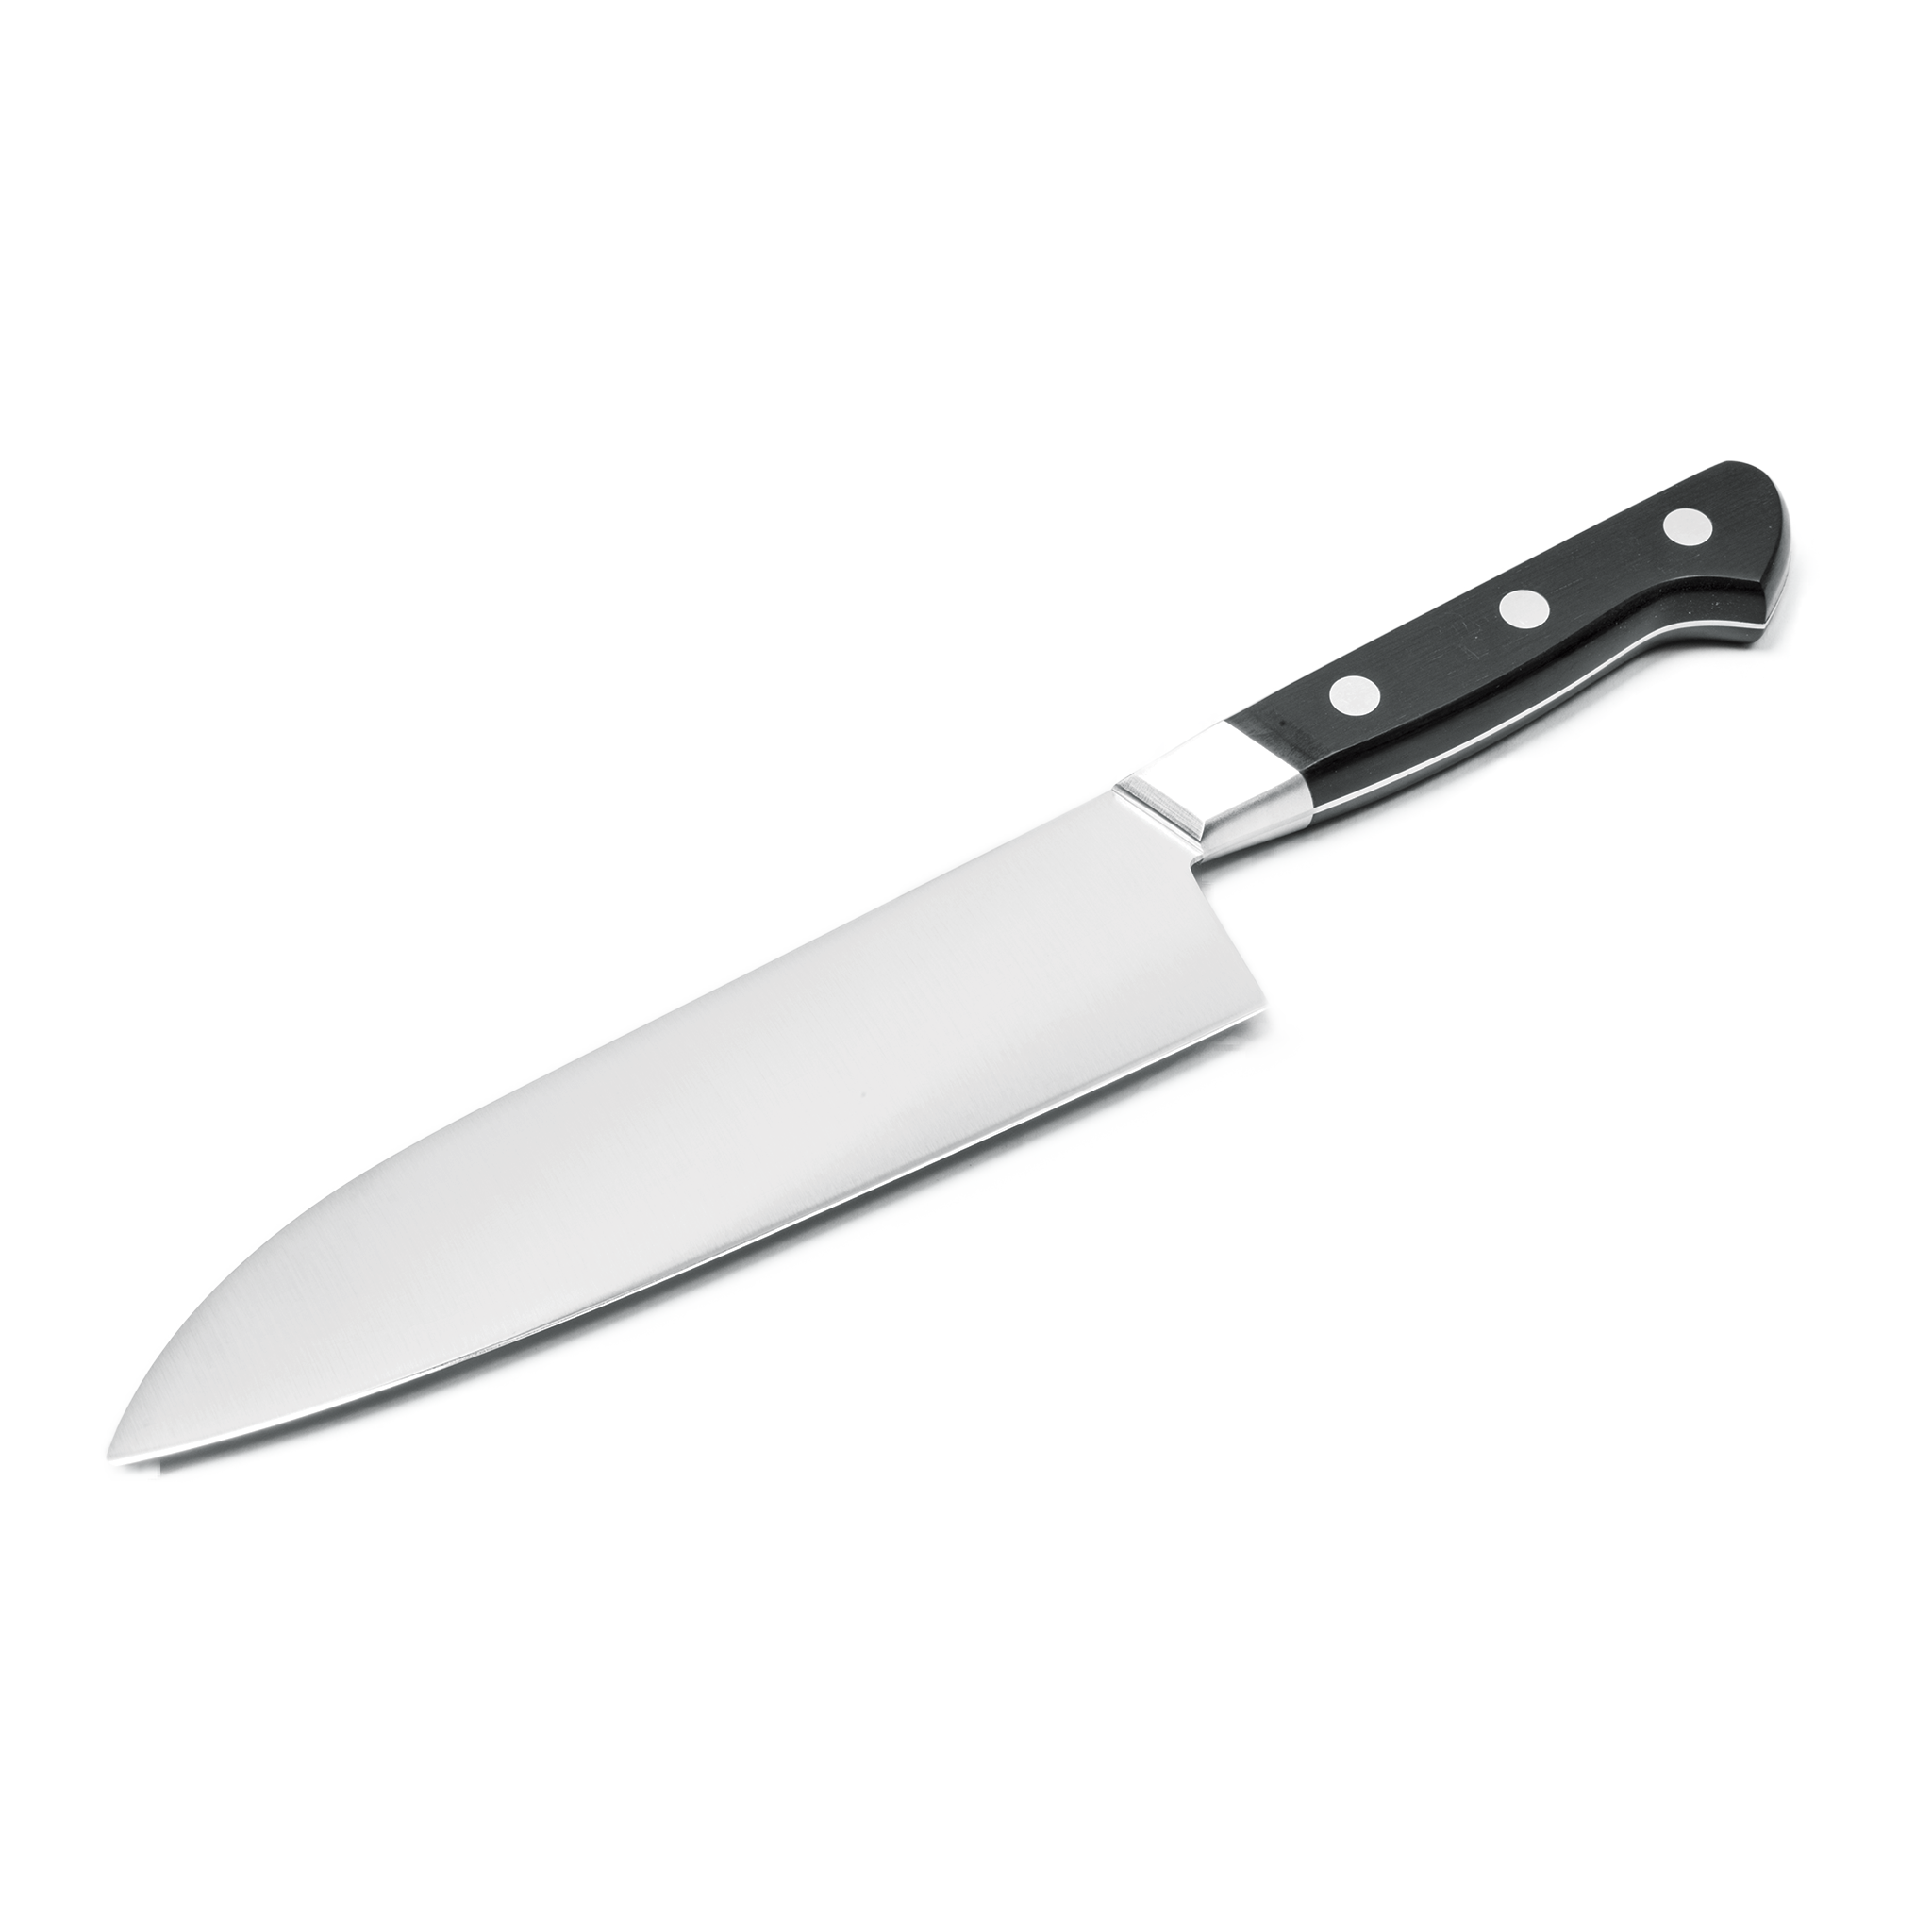 knife PNG image